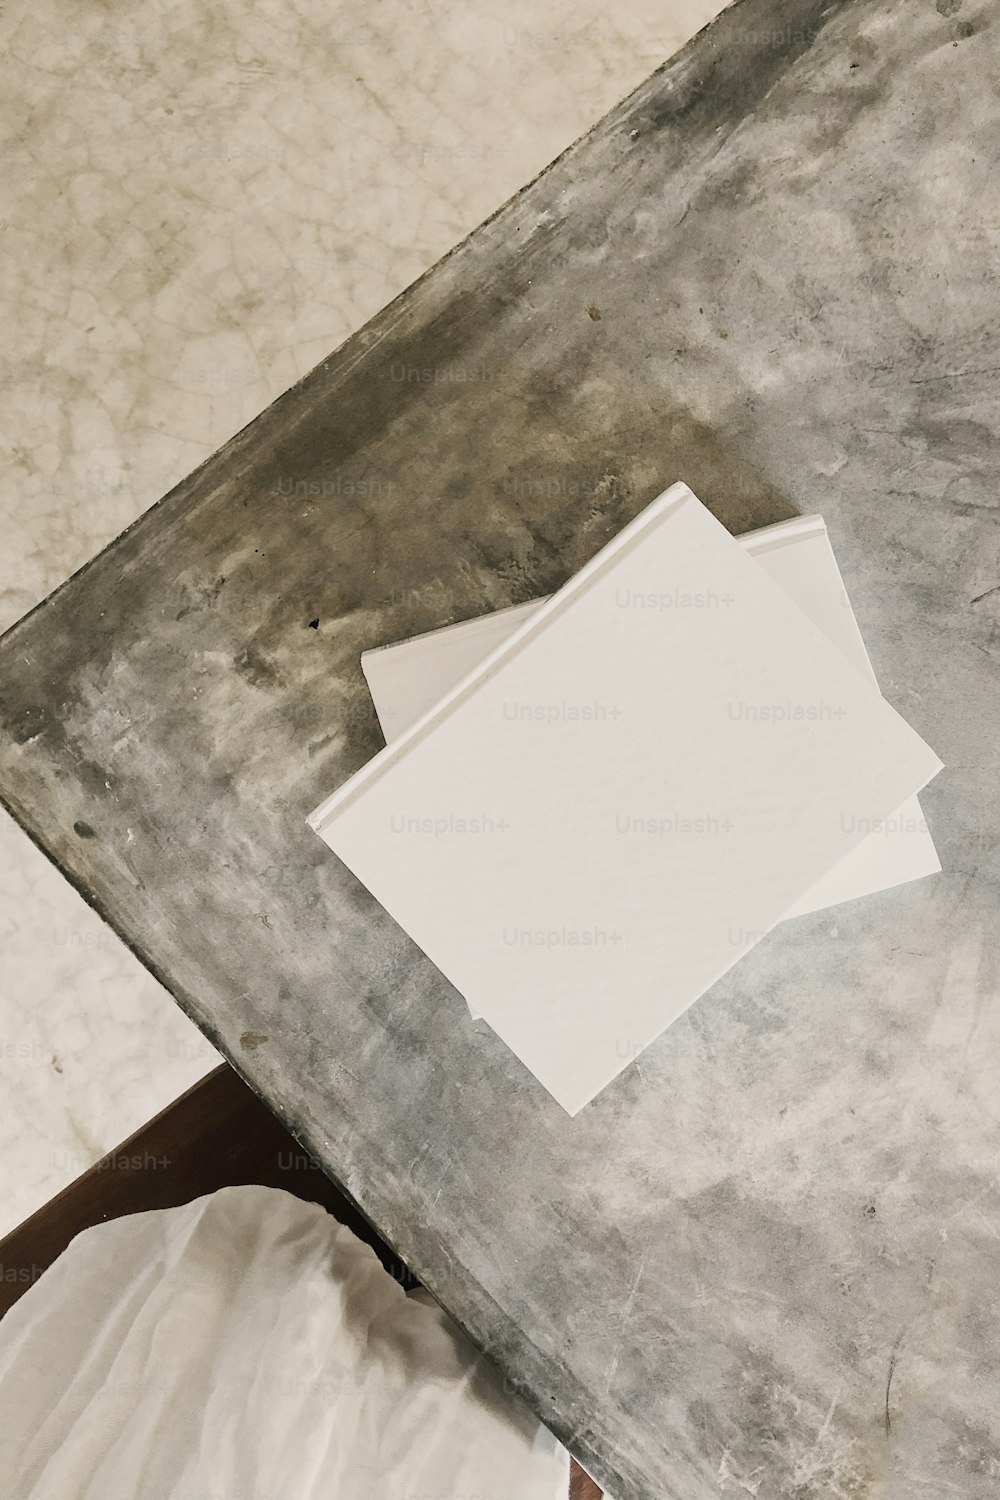 テーブルの上に置かれた白い紙